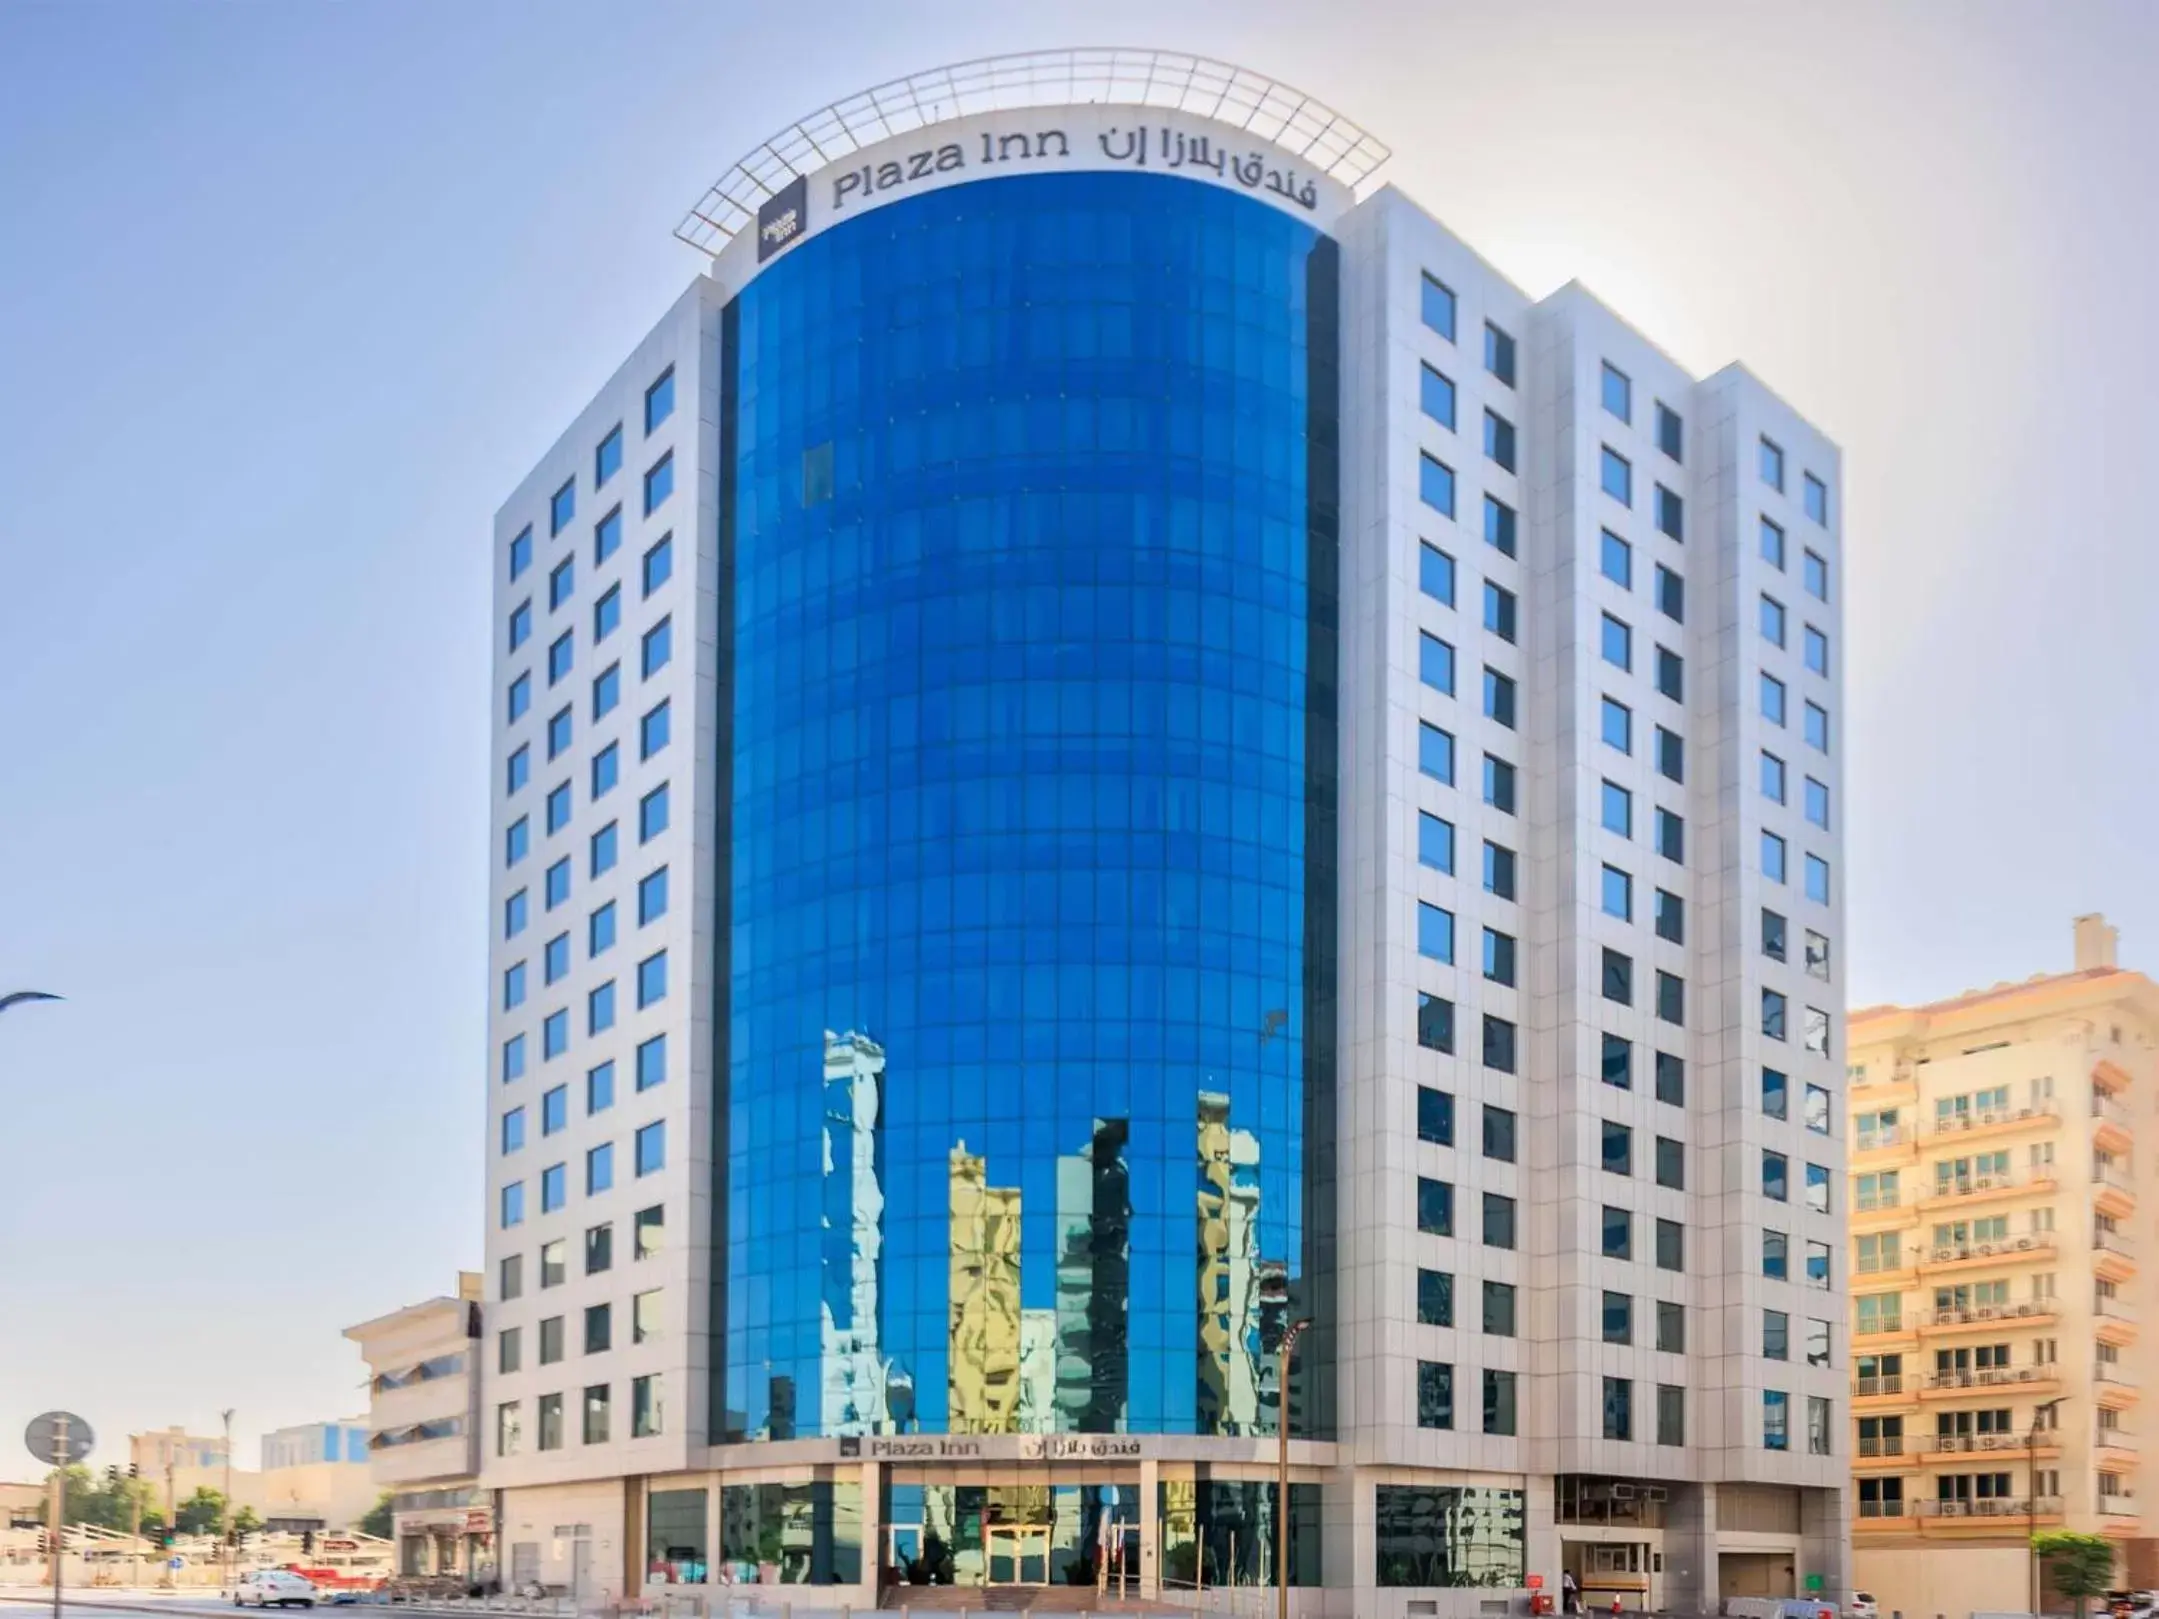 Property Building in Plaza Inn Doha